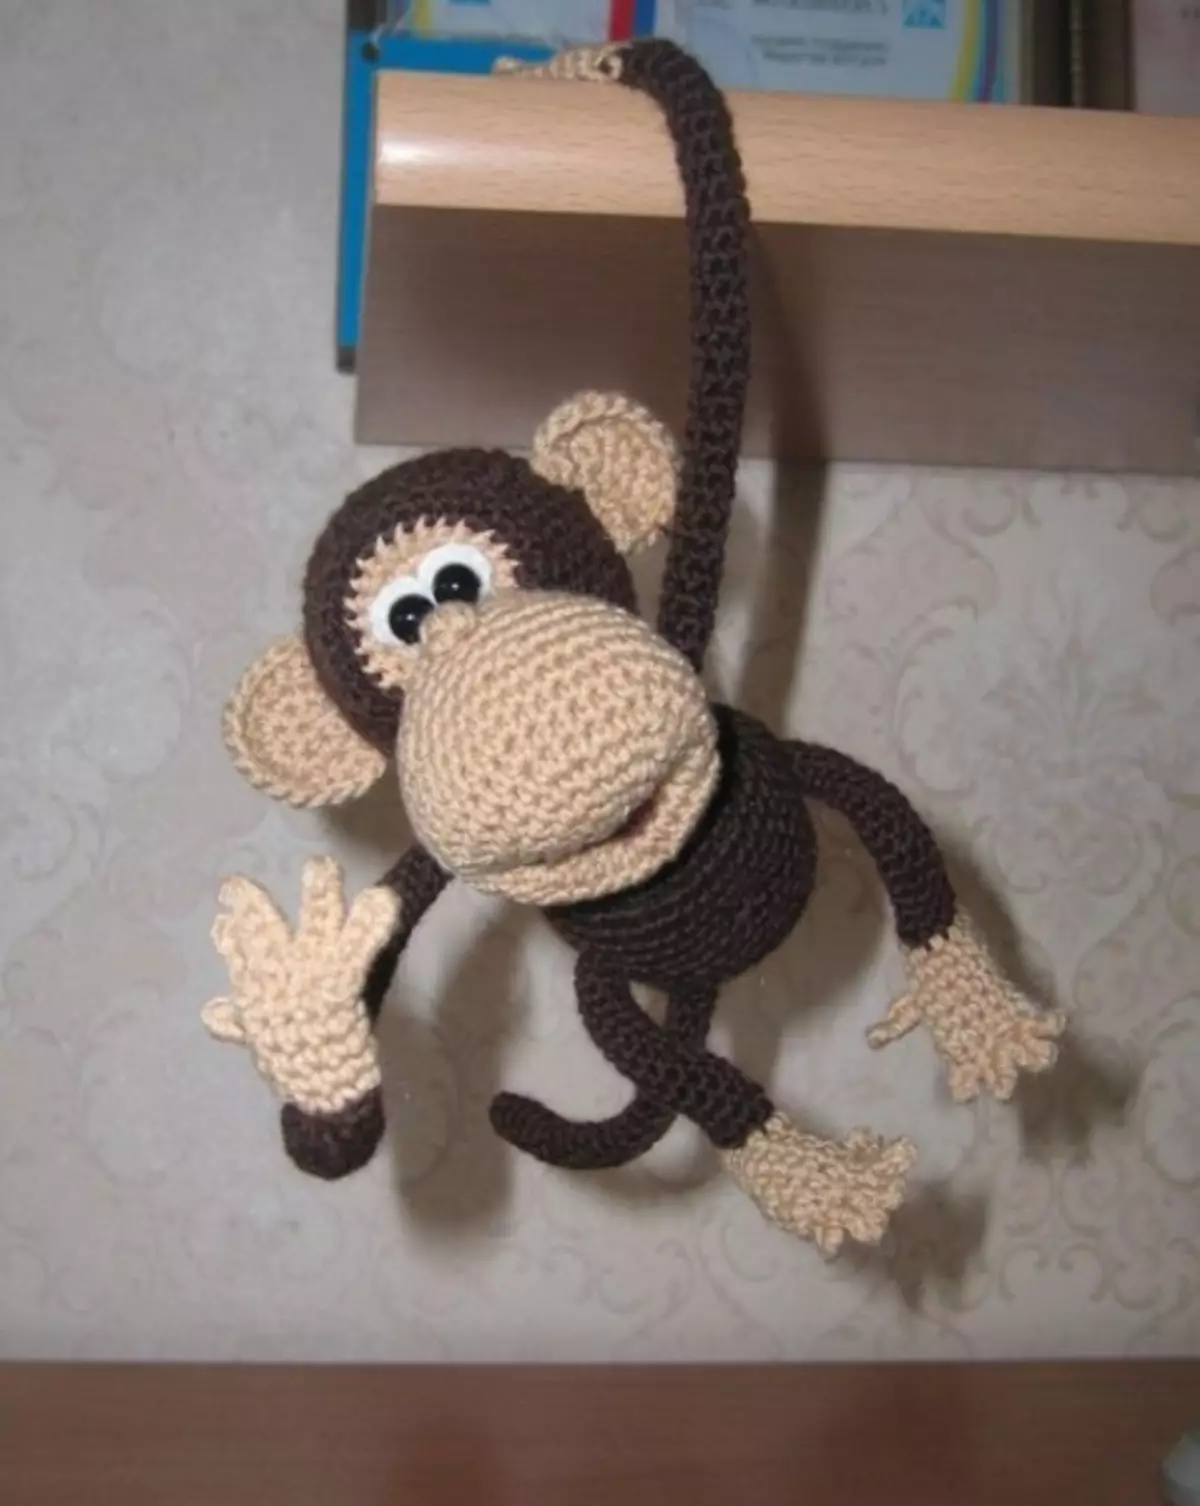 کس طرح اور بندر بندر خود کو کرتا ہے